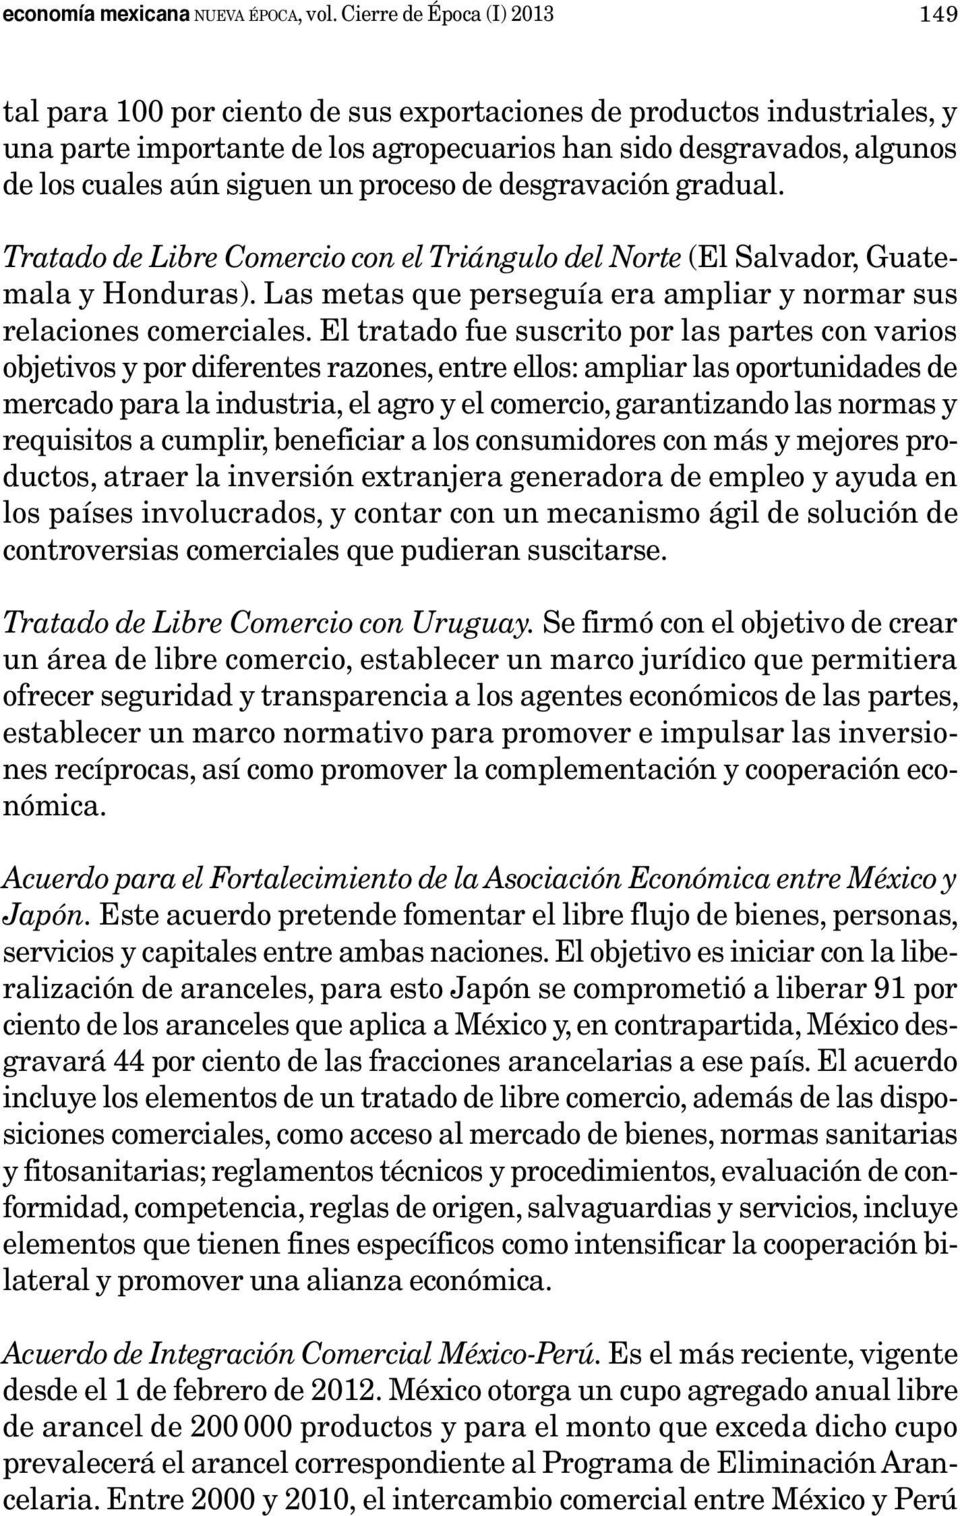 un proceso de desgravación gradual. Tratado de Libre Comercio con el Triángulo del Norte (El Salvador, Guatemala y Honduras). Las metas que perseguía era ampliar y normar sus relaciones comerciales.